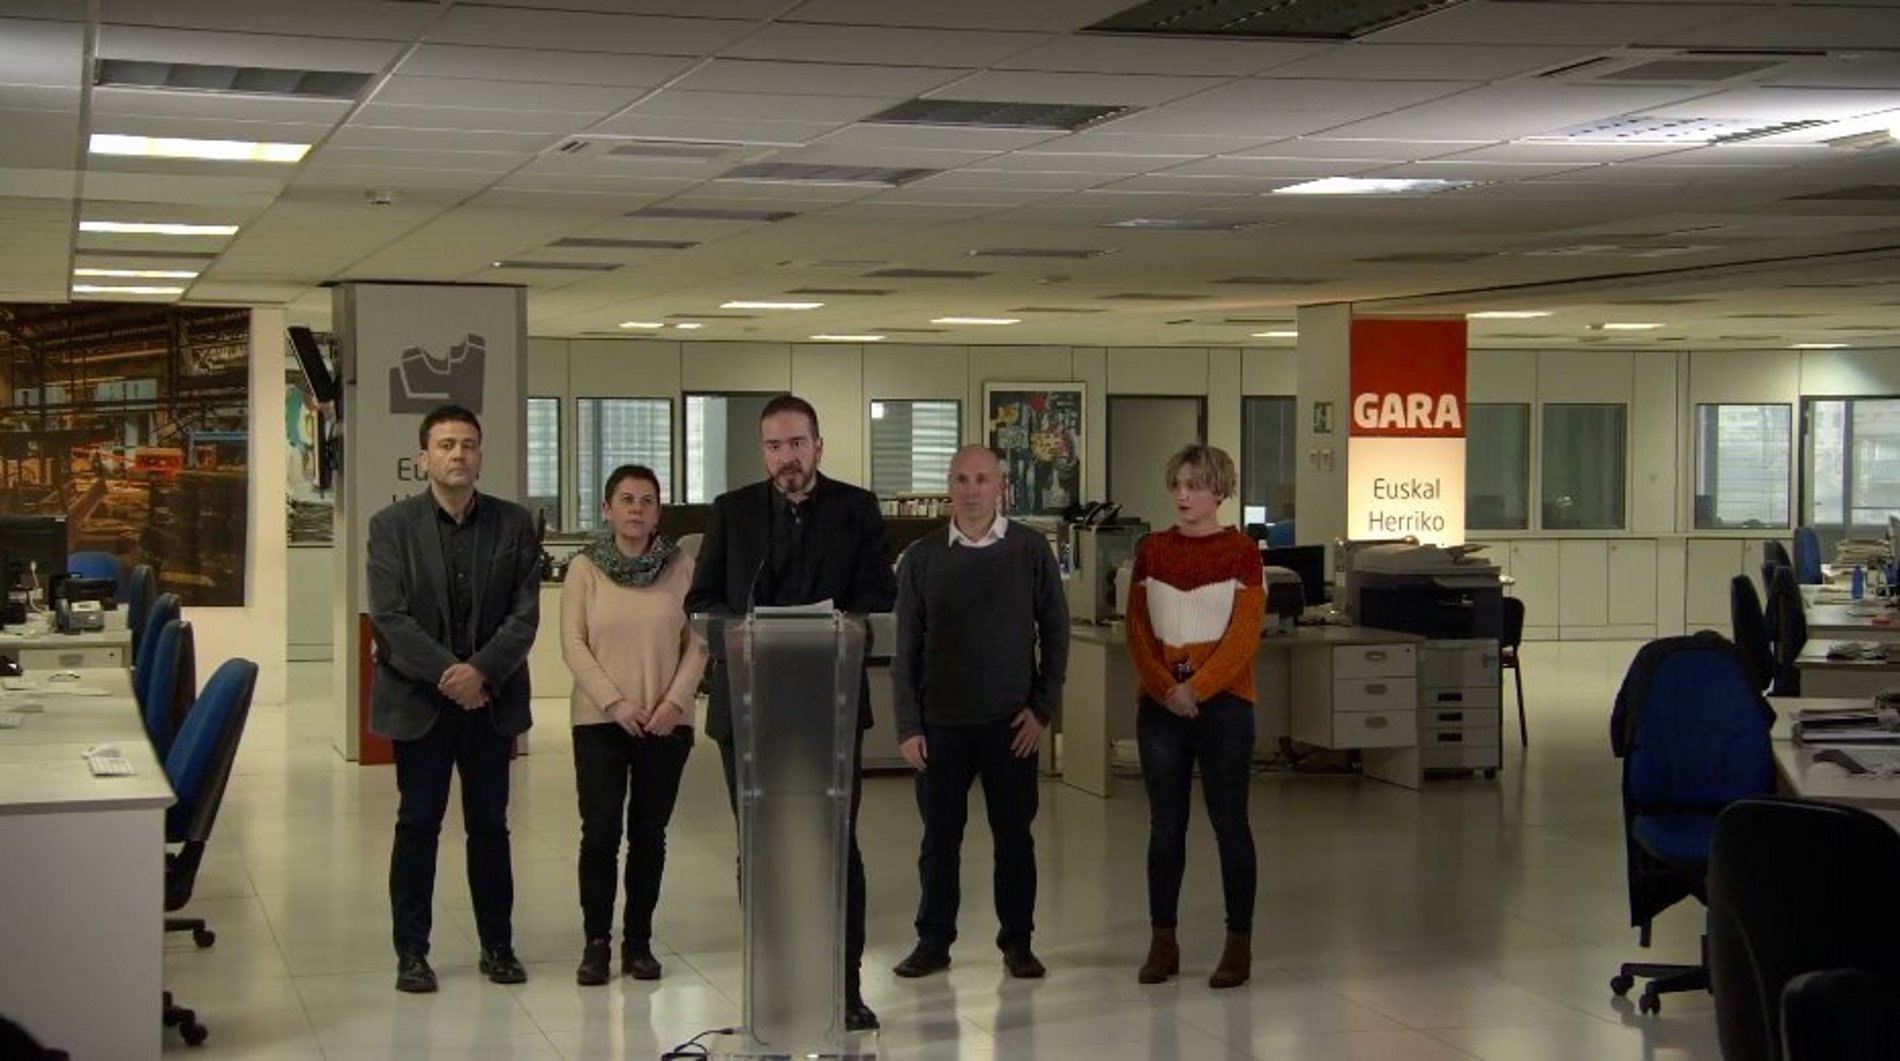 Periodistes catalans i bascos se solidaritzen amb el 'Gara'